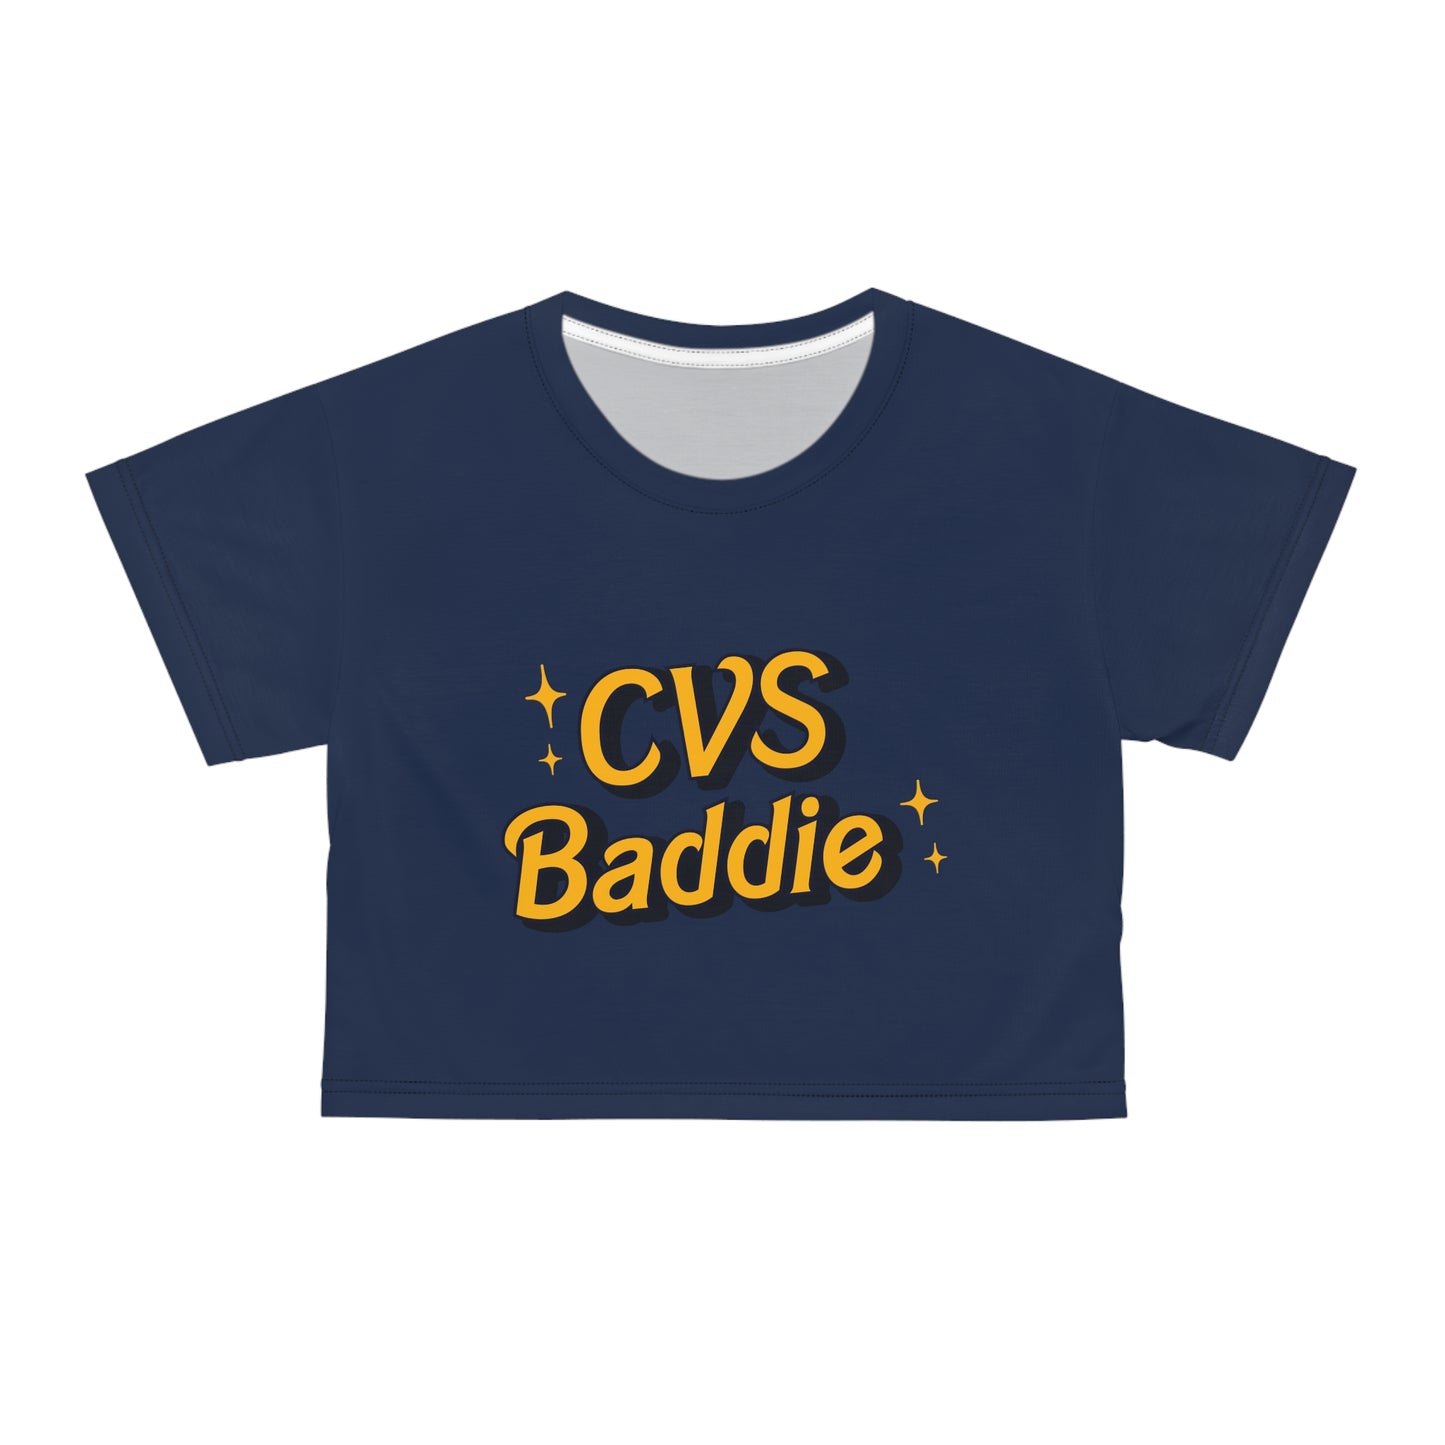 CVS Cavaliers | Chicago Vocational School Crop Top | CVS Crop Top